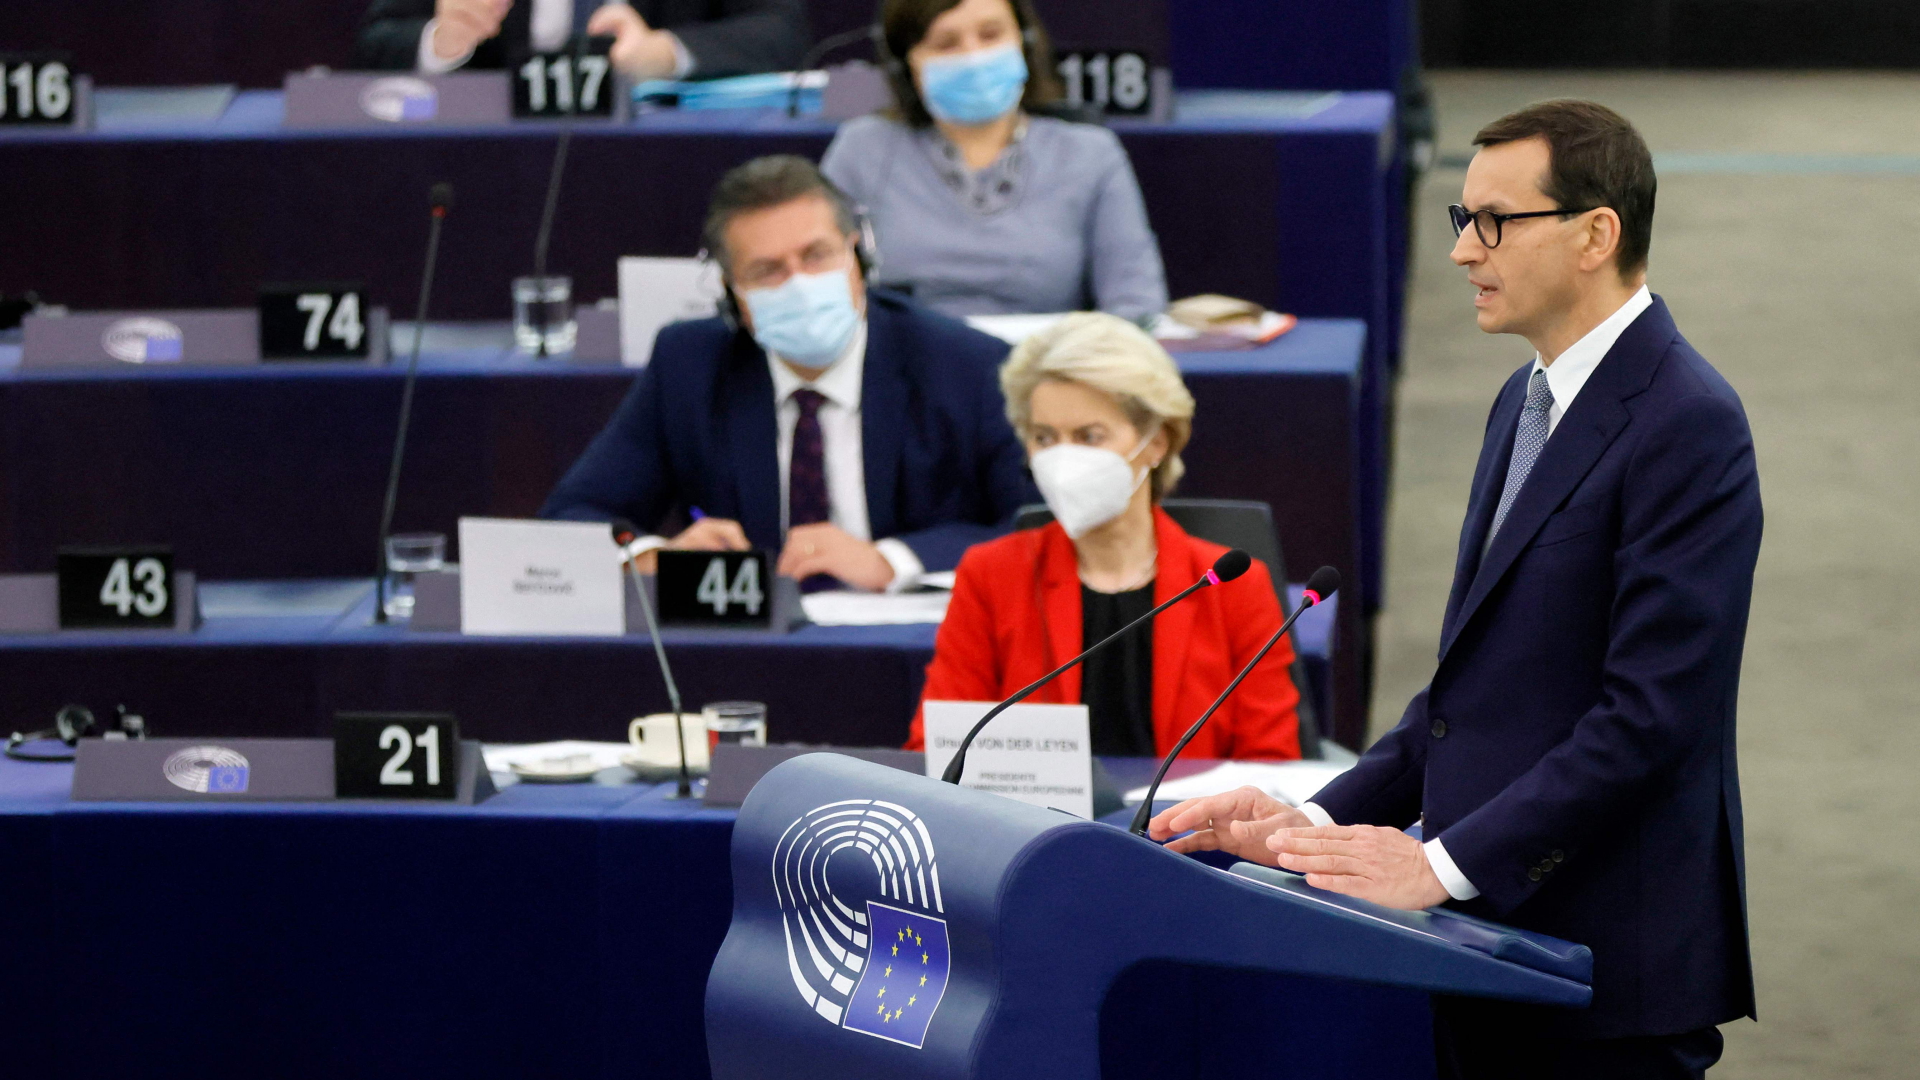 Der polnische Premierminister Mateusz Morawiecki hält eine Rede während einer Sitzung des Europäischen Parlaments | AFP